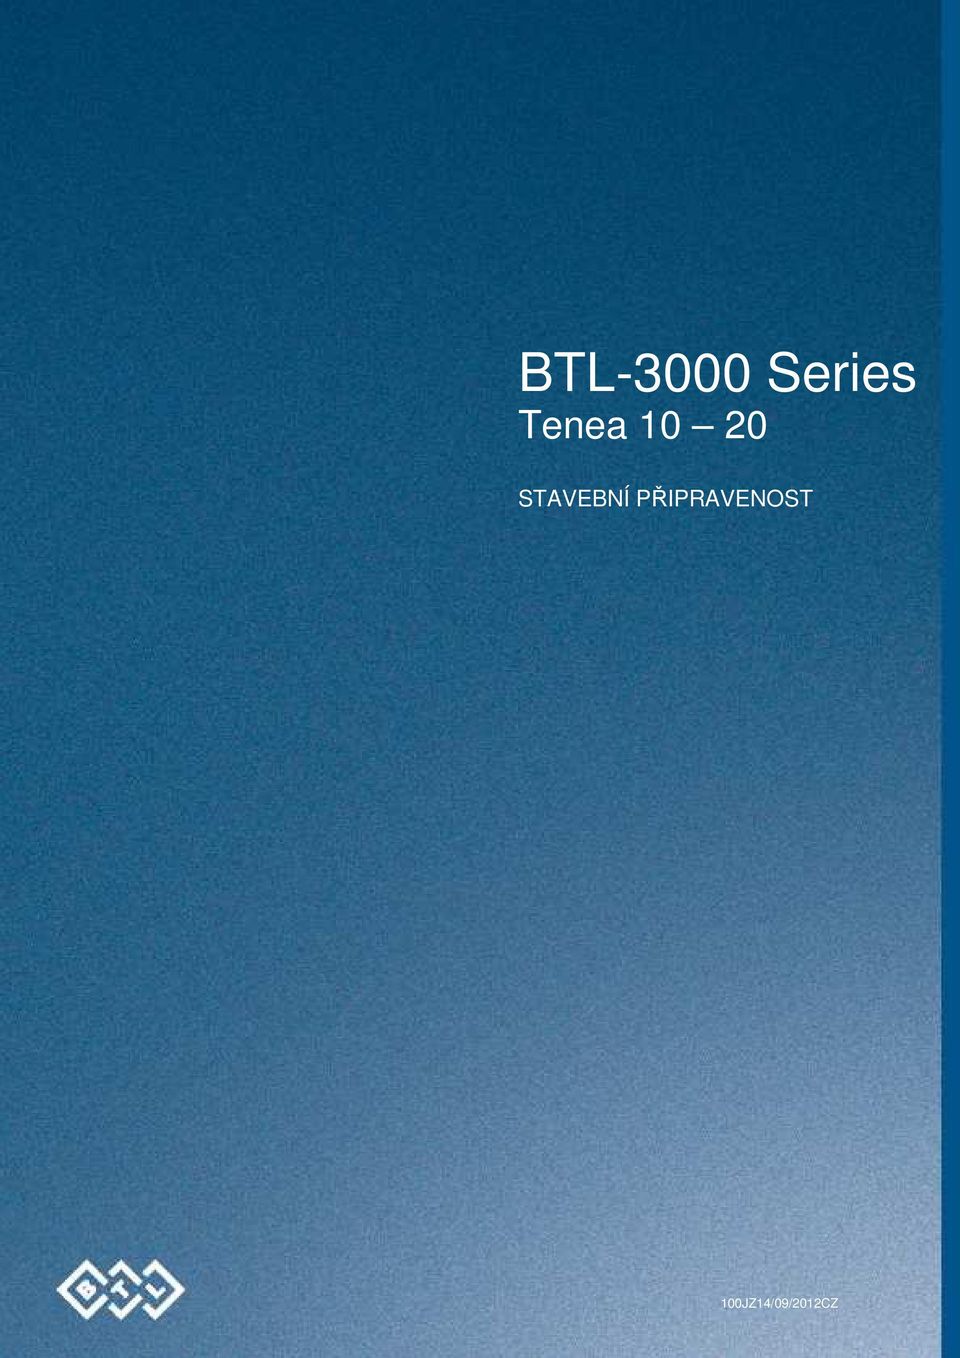 BTL-3000 SERIES - TENEA